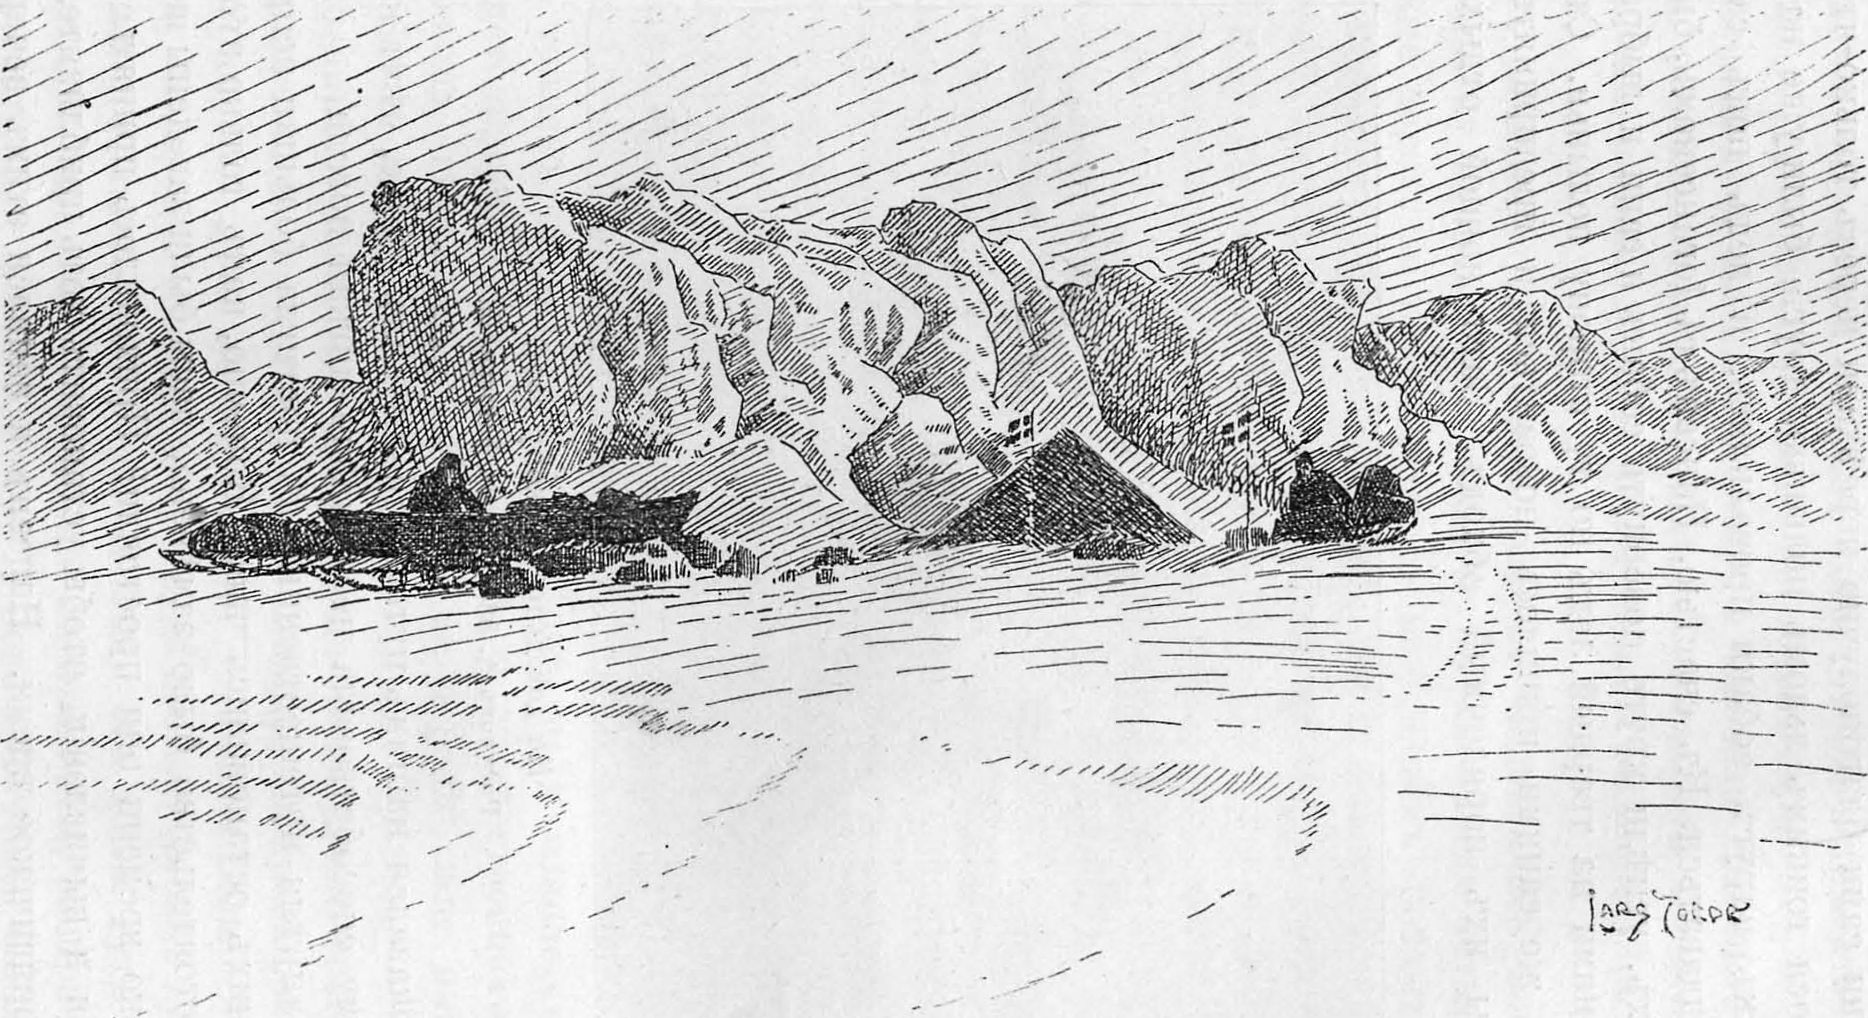 Самый северный лагерь. 86°13′36″. Рисунок Иорде по фотографии, снятой 8 апреля 1895 года